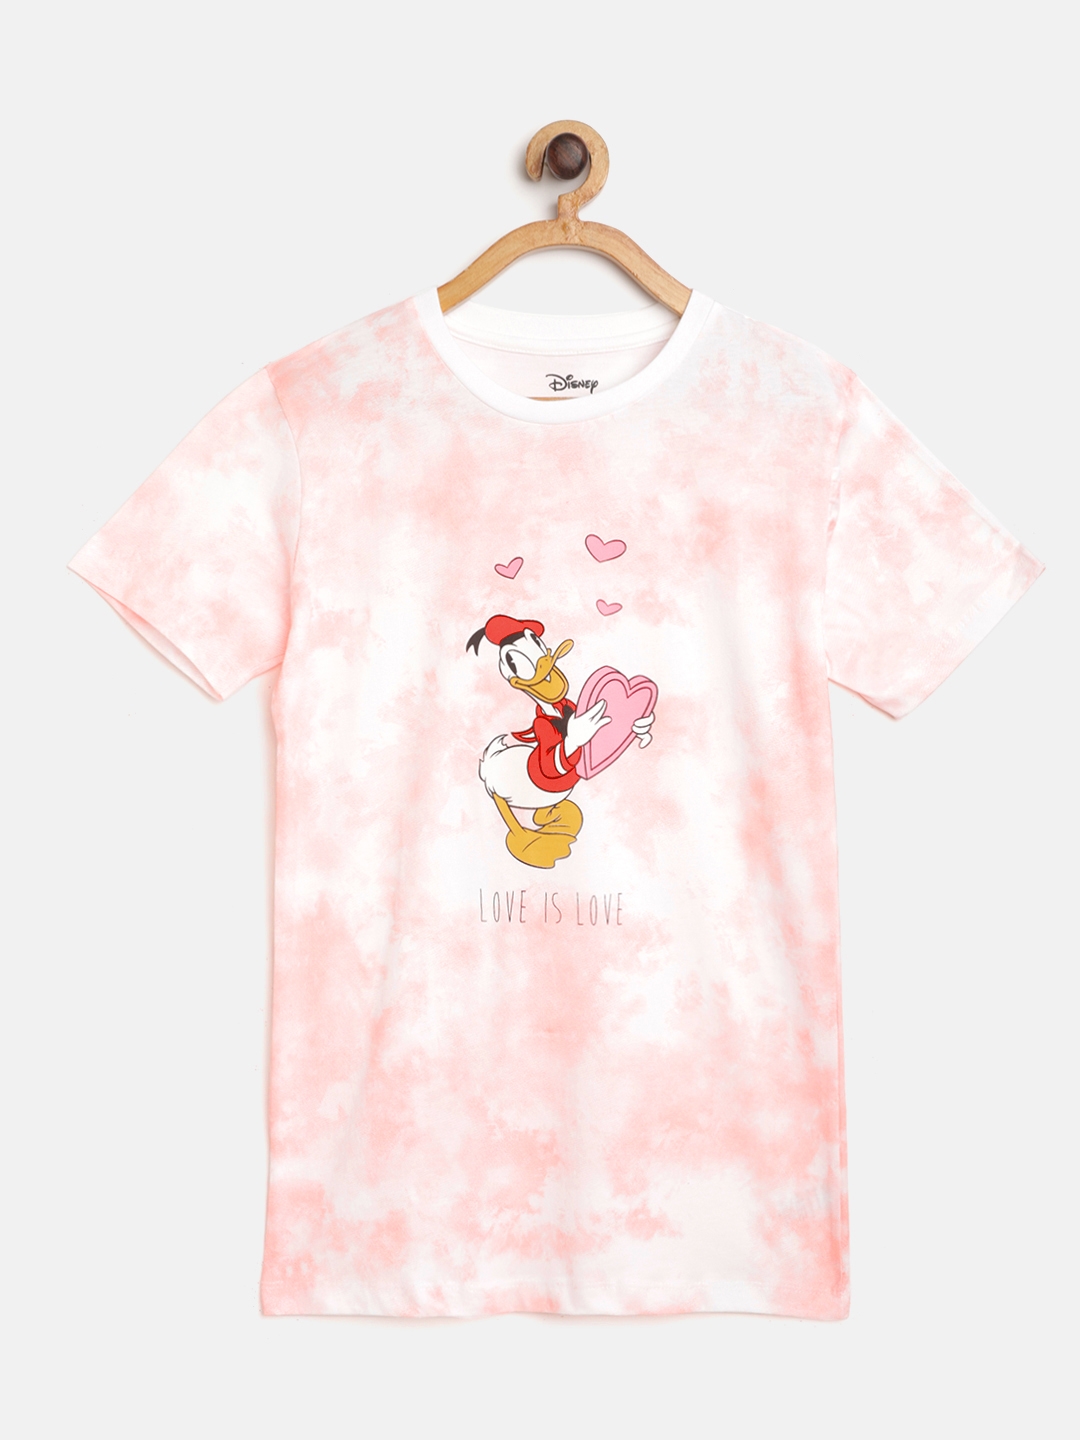 Kook N Keech Disney Teens Girls Peach Coloured   White Cotton Dyed Donald Duck T shirt